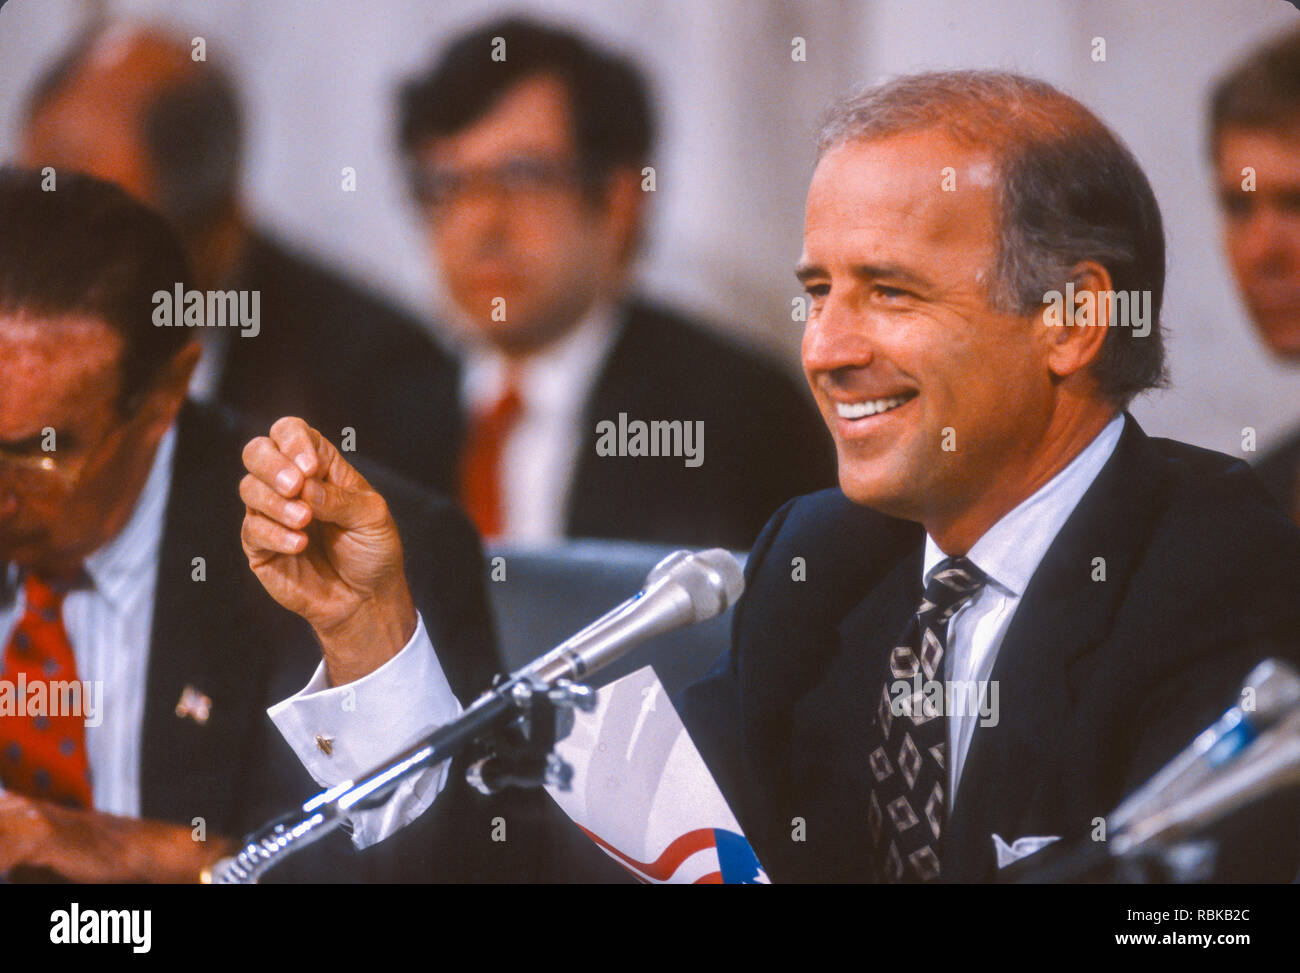 WASHINGTON, DC, USA - 12 septembre 1991 : Le sénateur Joseph Biden (D-New York), Président du Comité judiciaire du Sénat des États-Unis, au cours de l'audience Clarence Thomas. Banque D'Images